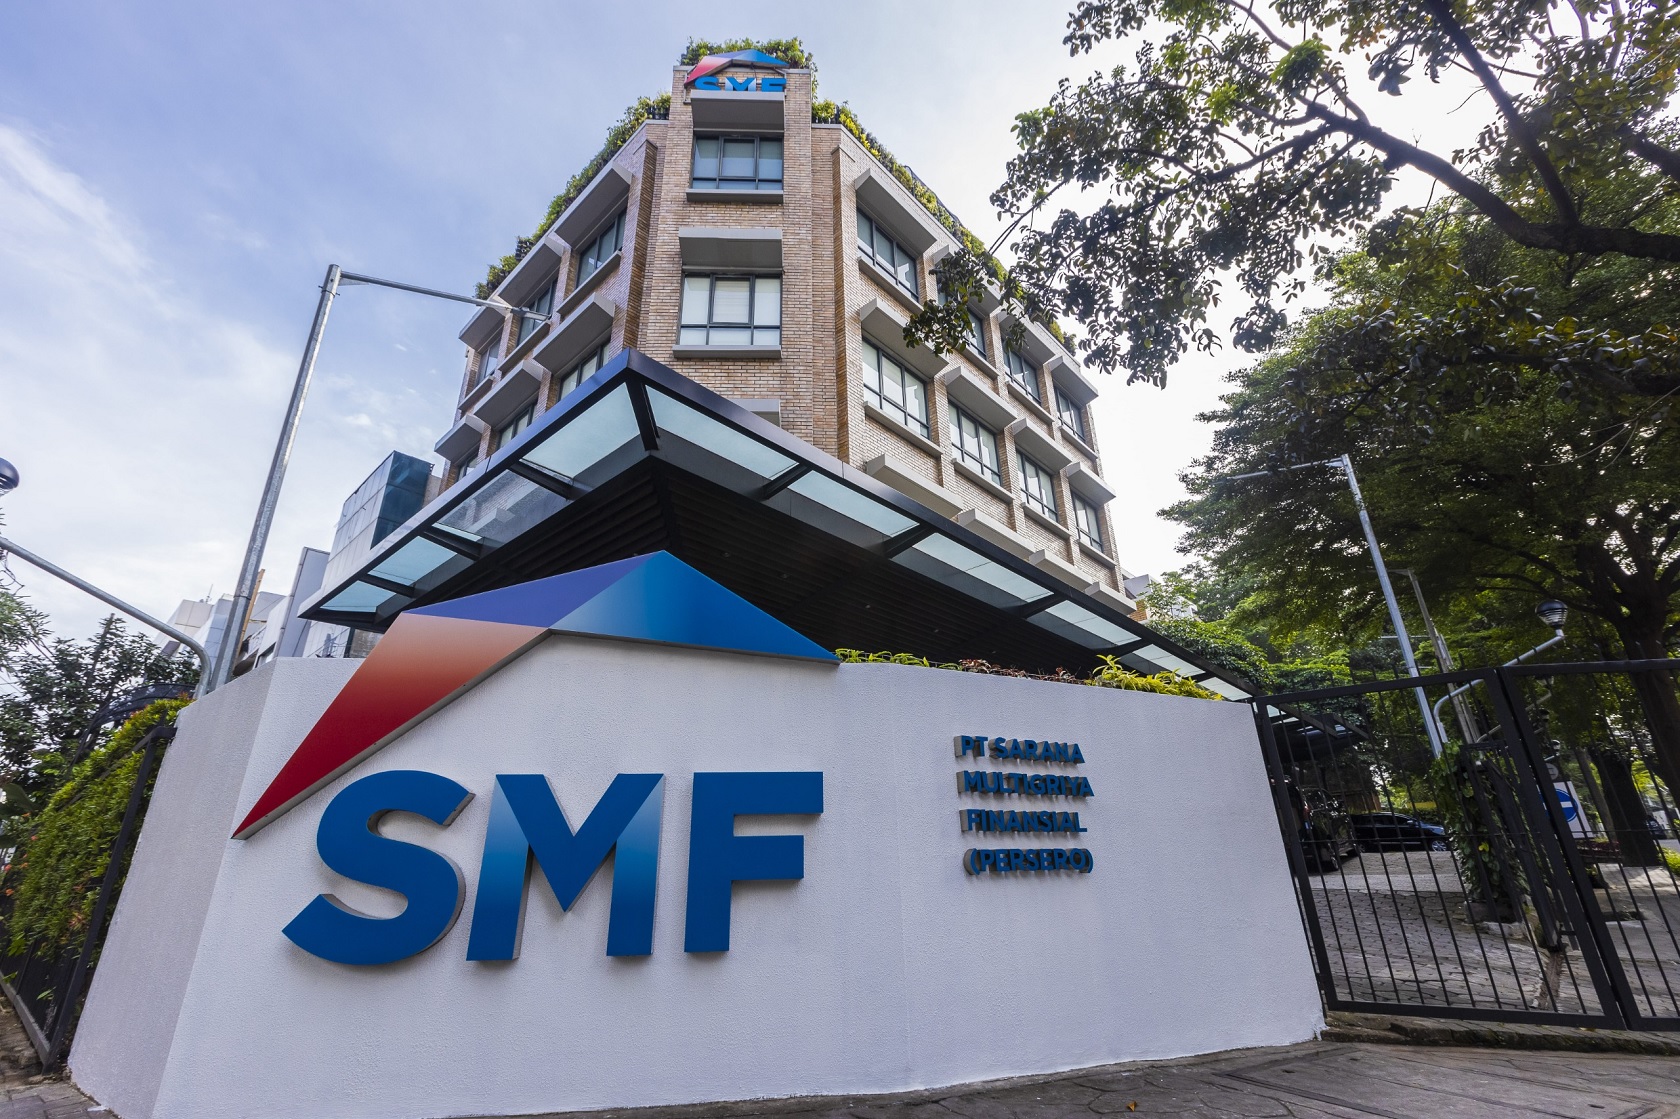 Dukung Program KPR Subsidi Untuk MBR, SMF Terbitkan Social Bond Pertama di Indonesia Rp8 Triliun